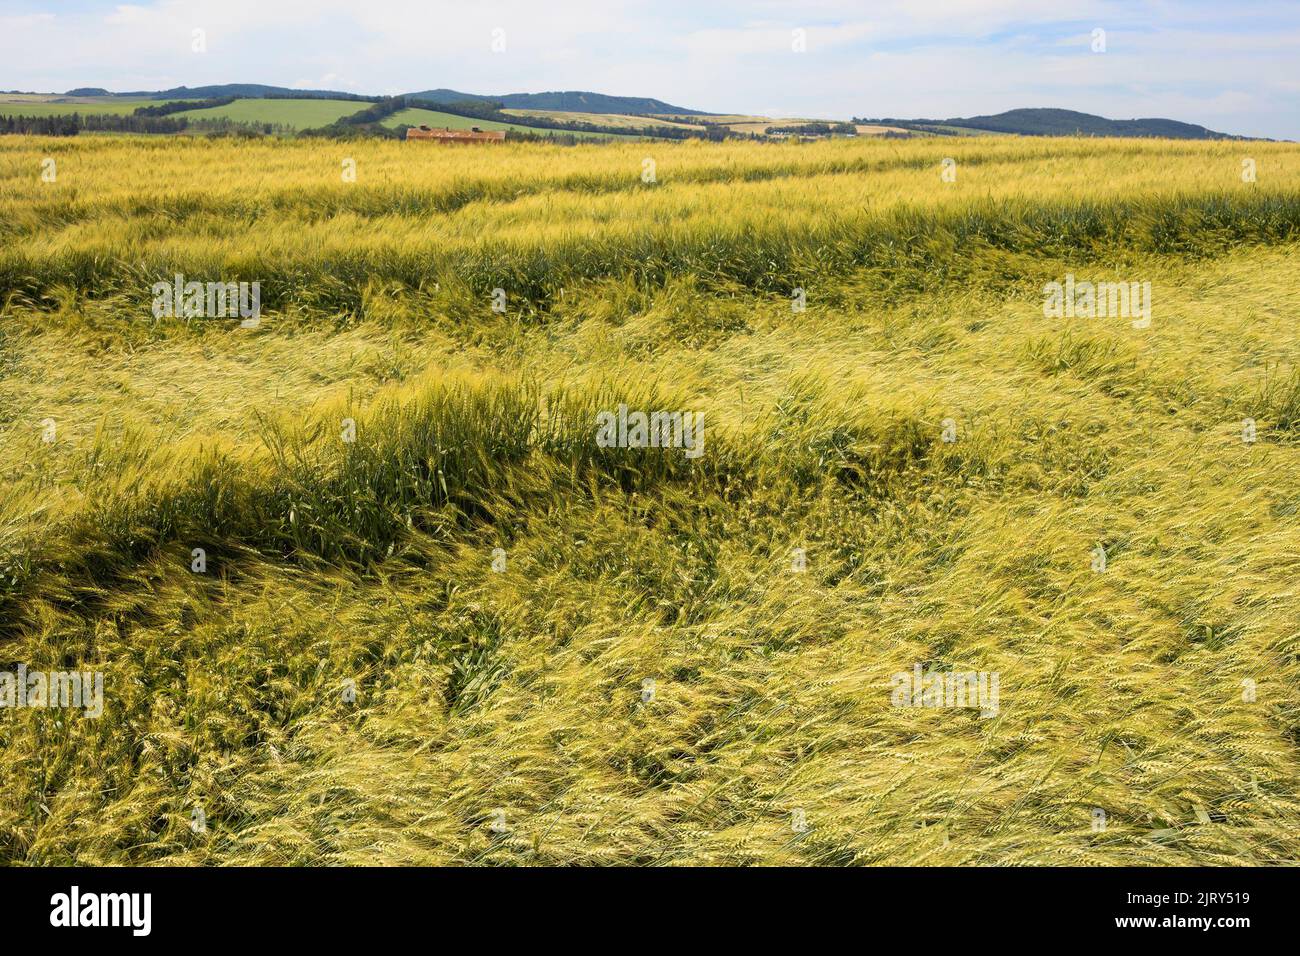 Una cosecha de trigo aplanada por una tormenta de lluvia y los daños causados por el granizo en un campo agrícola de la pradera en verano, Alberta central, Canadá. La cosecha es todavía harvable. Foto de stock